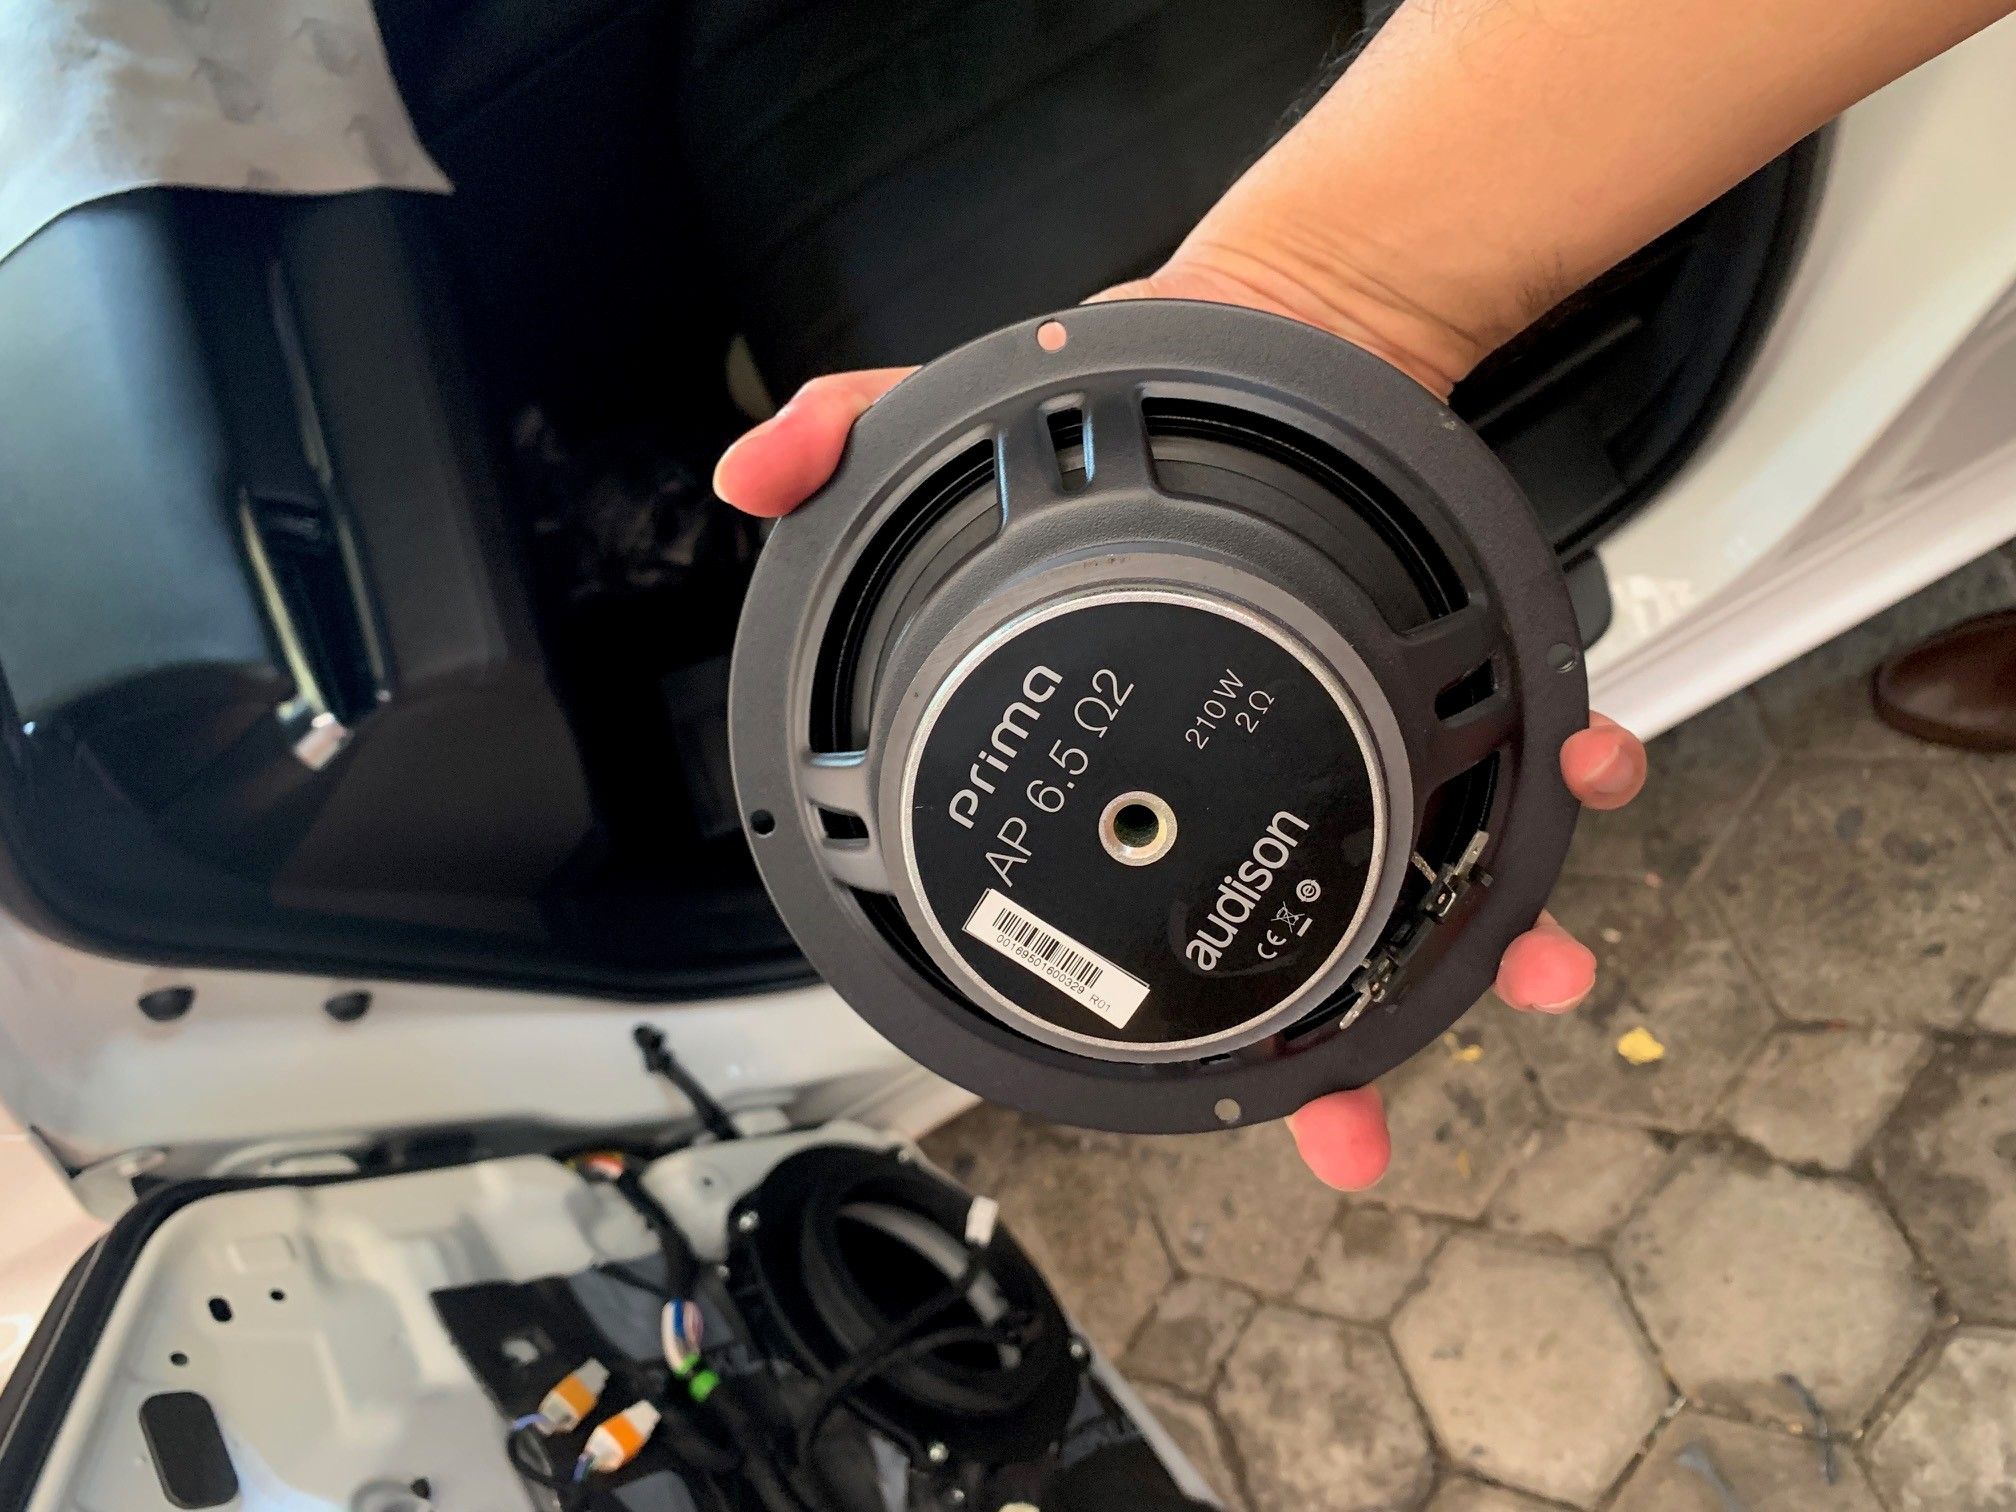 خروف عمليه الضرب بومبي  Mazda 6 Estate / Wagon 2019 - Audio Upgrade for Daily Driving |  DiyMobileAudio.com Car Stereo Forum